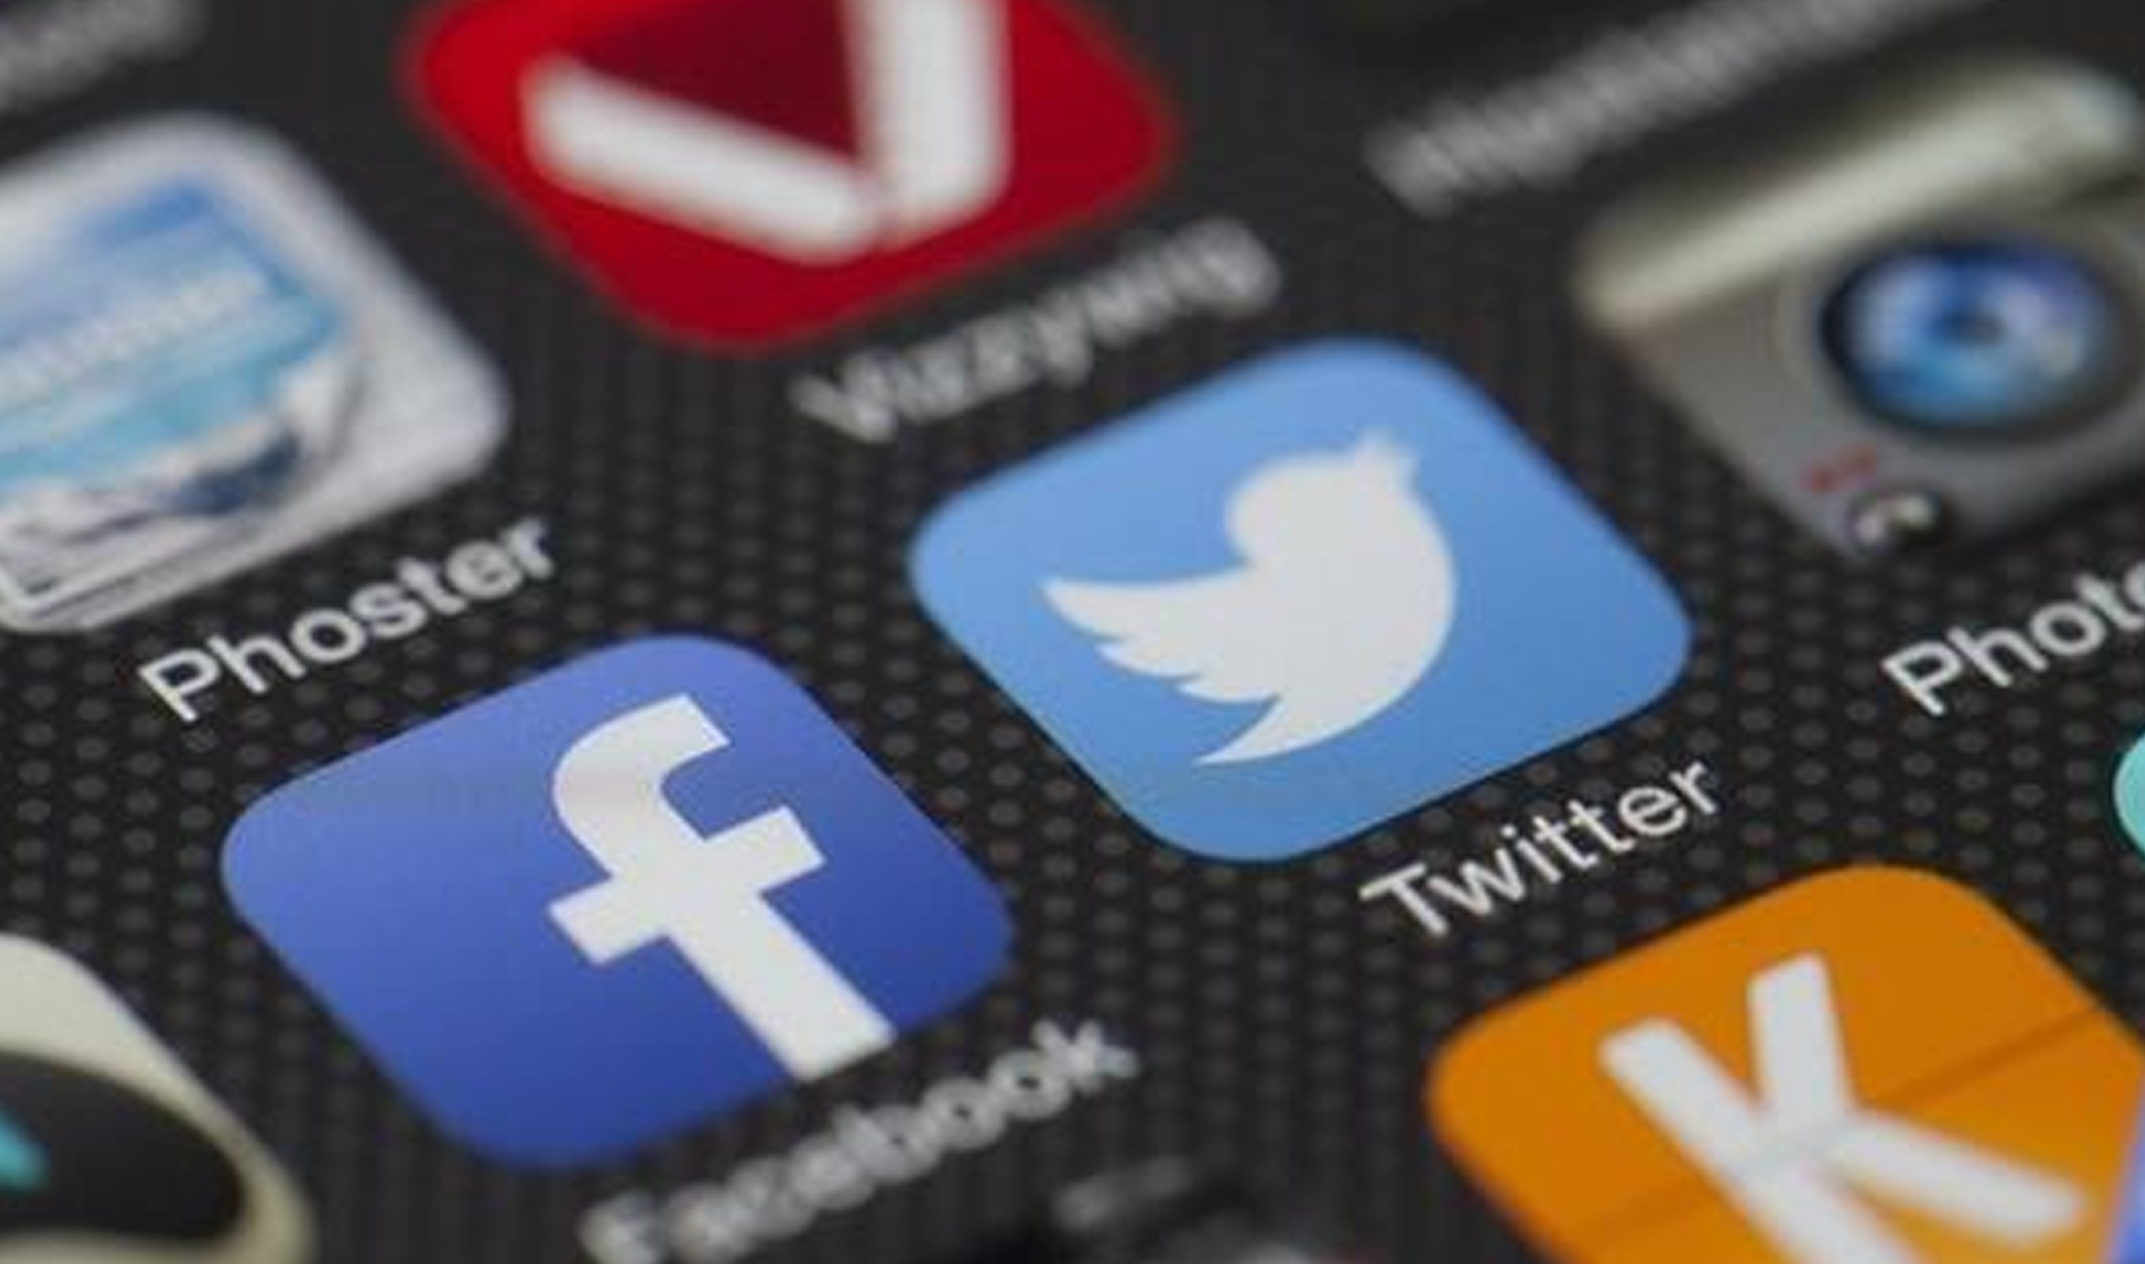 Кремль отследит реакцию региональных властей на недовольство в социальных сетях